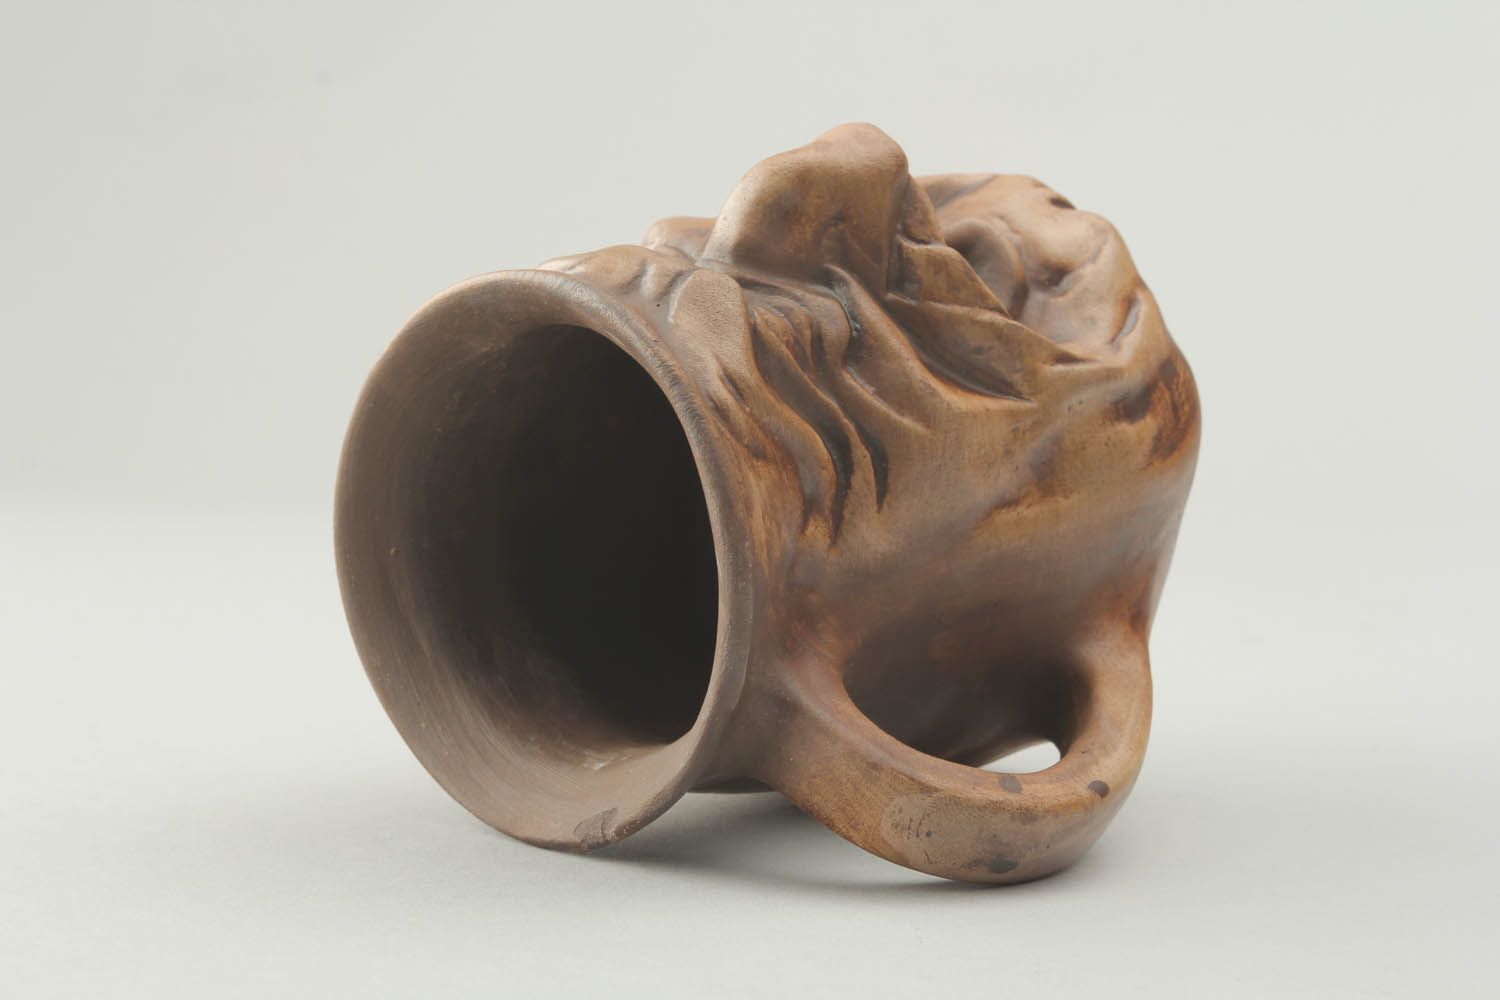 Large 10 oz ceramic decorative drinking mug in old man face shape photo 5